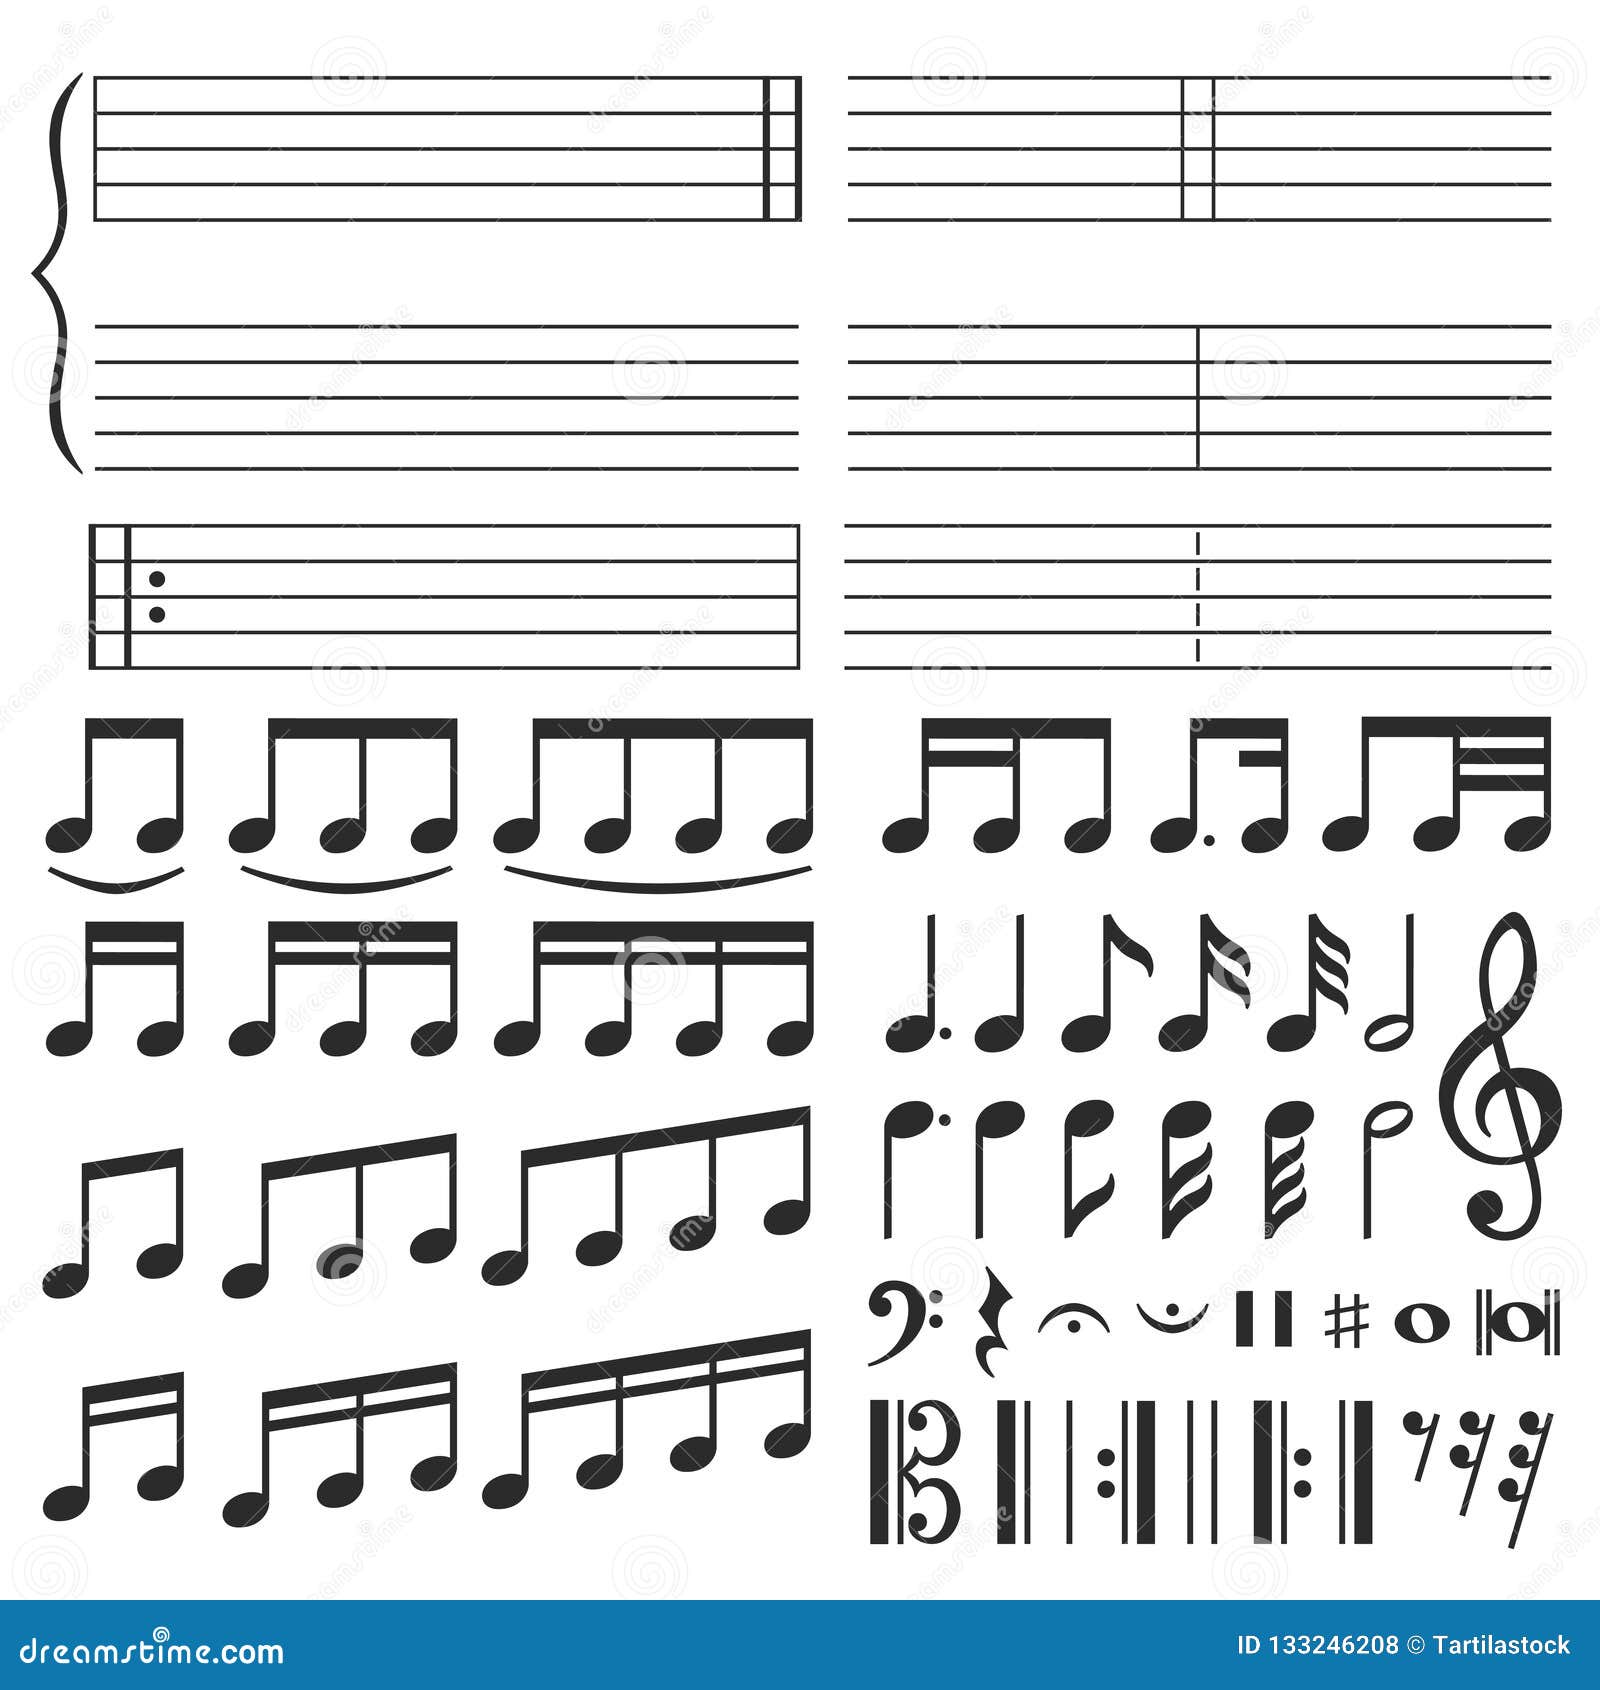 Notação musical da aula de música - ícones de música grátis